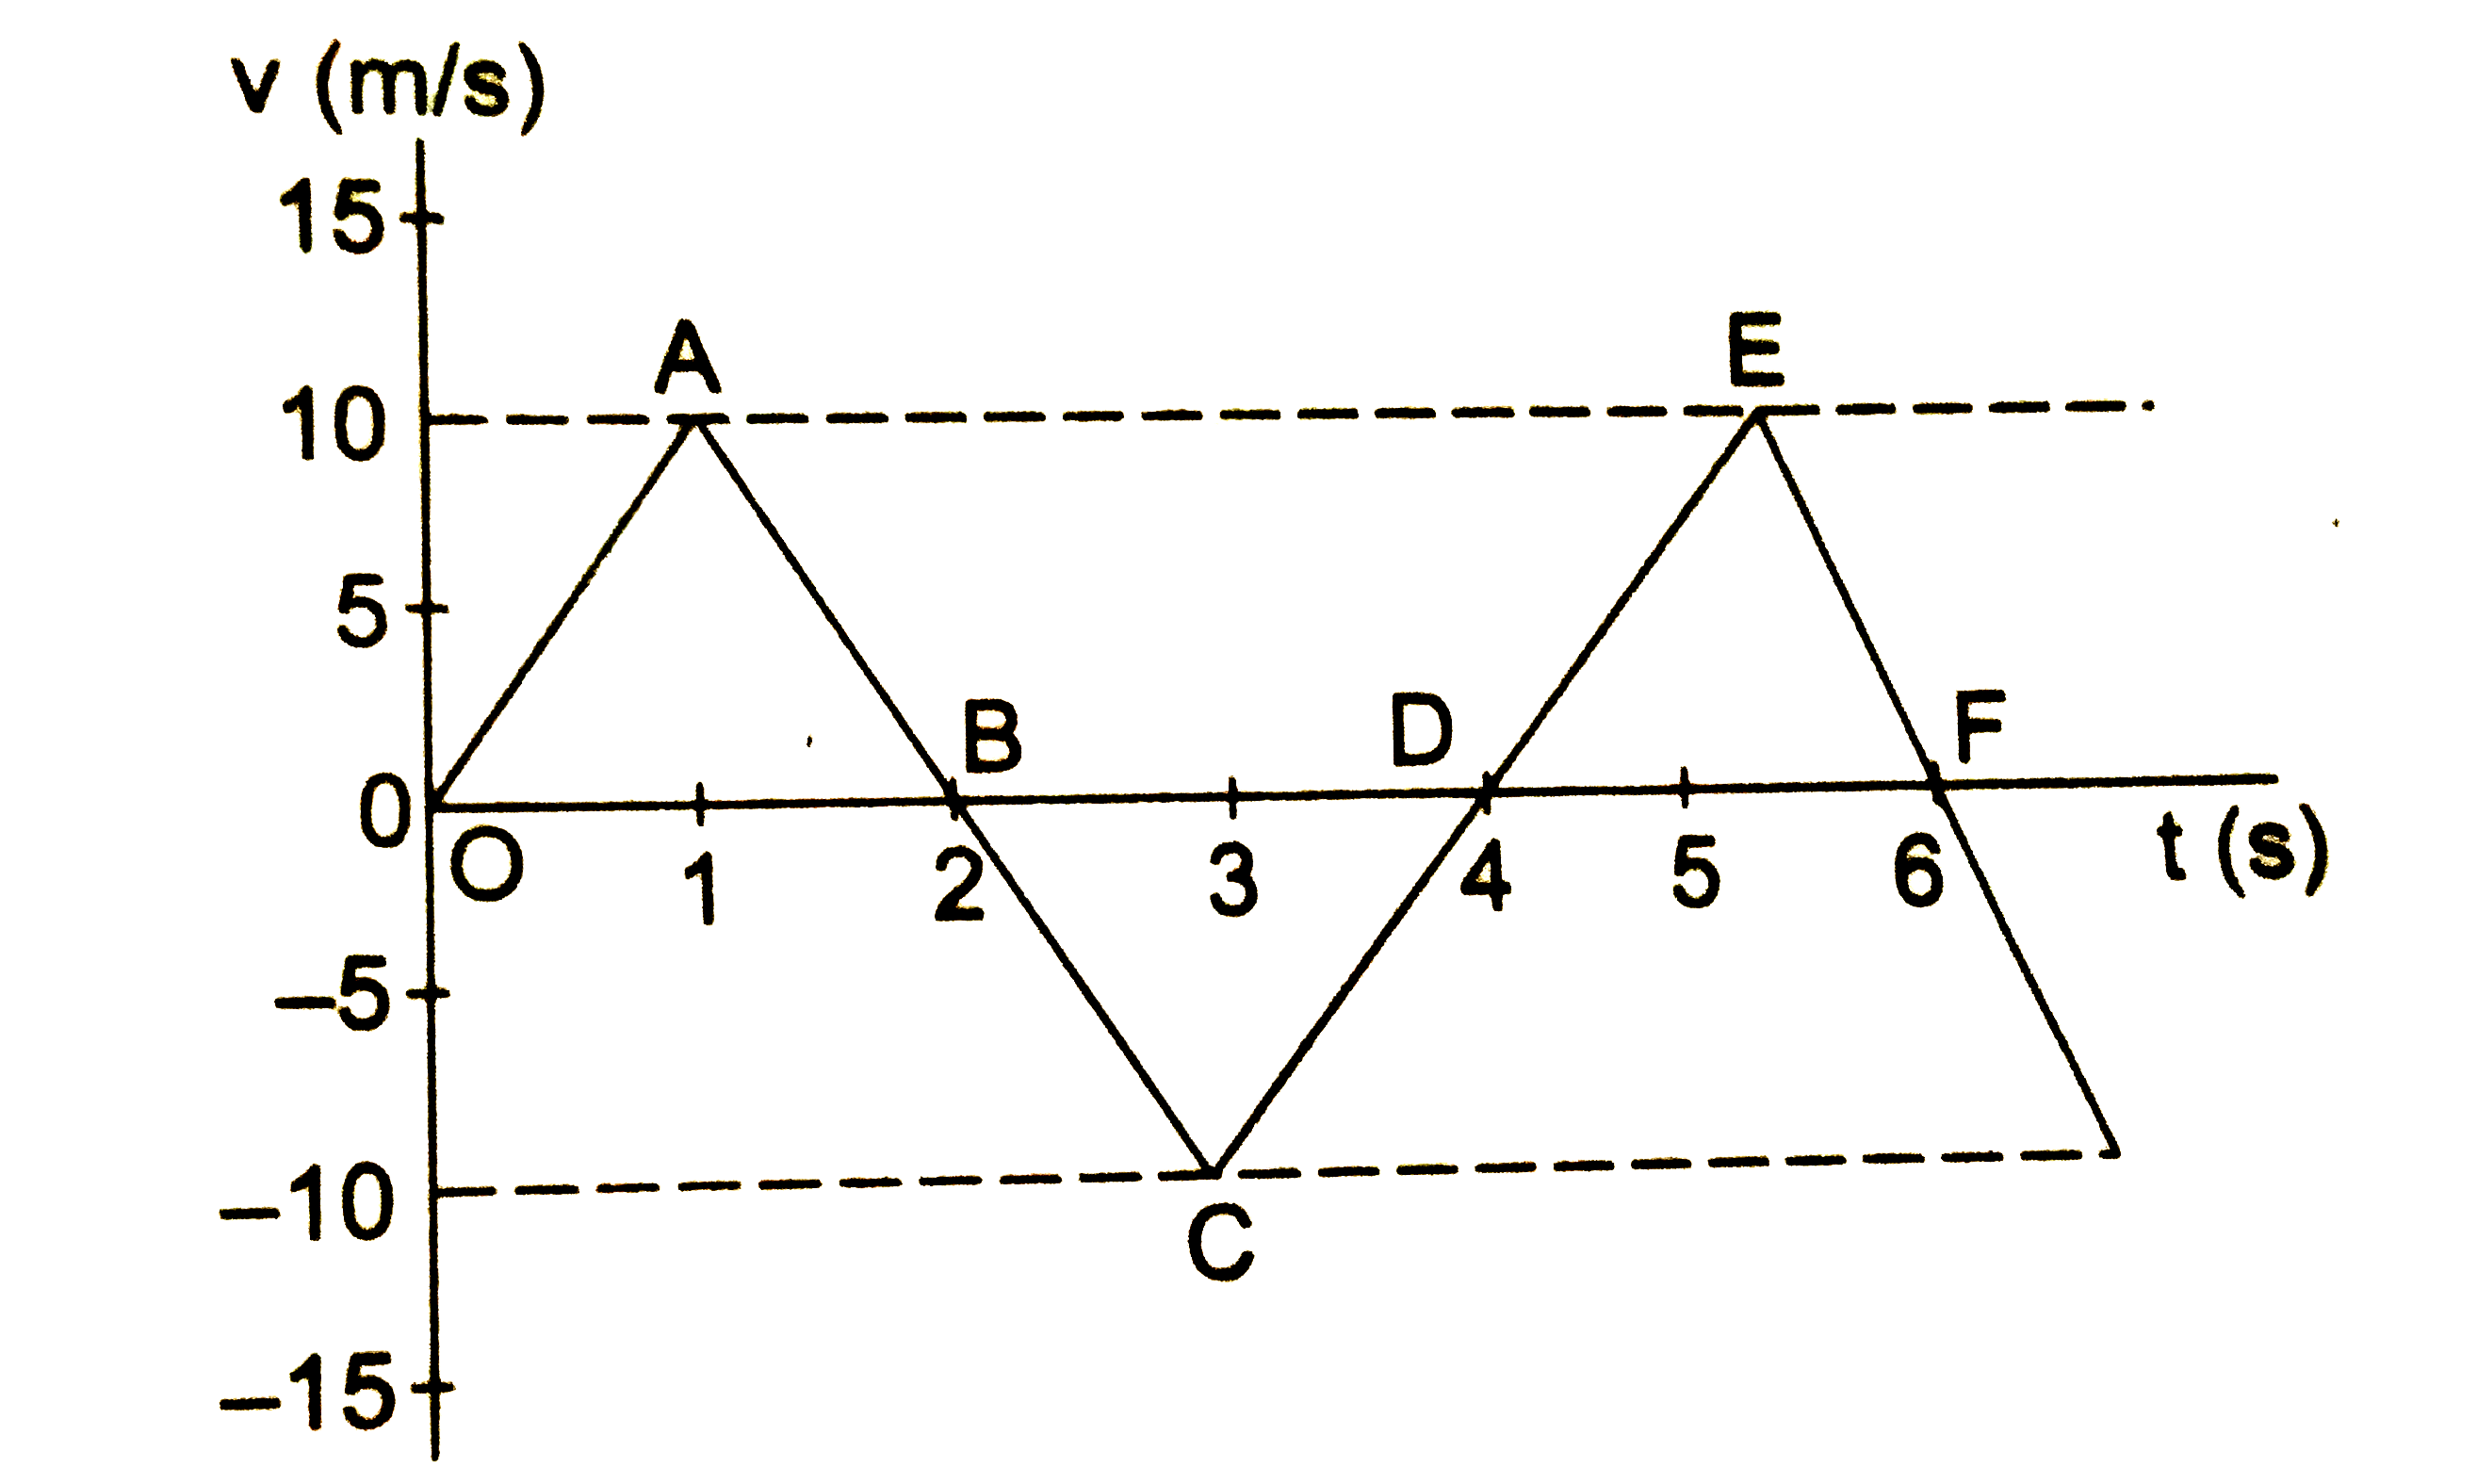 चित्र  में  x  -अक्ष  पर  चलते  हुए  एक  कण के  वेग  का  समय  के साथ  ग्राफ  दिखाया गया  है |      (a)  समय t  =0  से t  = 4s   तक  में कण  की गति  कैसी  है, इसका वर्णन करे |      (b)   पहले 2  सेकंड में कण  द्वारा  चली  गई दुरी  निकले |      (c )   t = 2s     से   t  =4s    तक   में  चली गई  दुरी  निकले  |    (d)    t = 0   से   t  =4s    तक में  चली  गई  दुरी  निकाले |     (e)   t = 0   से  t  = 4s   तक  में  विस्थापन निकले |    (f)    t =   ( 1 ) /( 2 )  s  पर  कण का त्वरण निकले |     (g)   t = 2s    पर कण का त्वरण  निकाले |